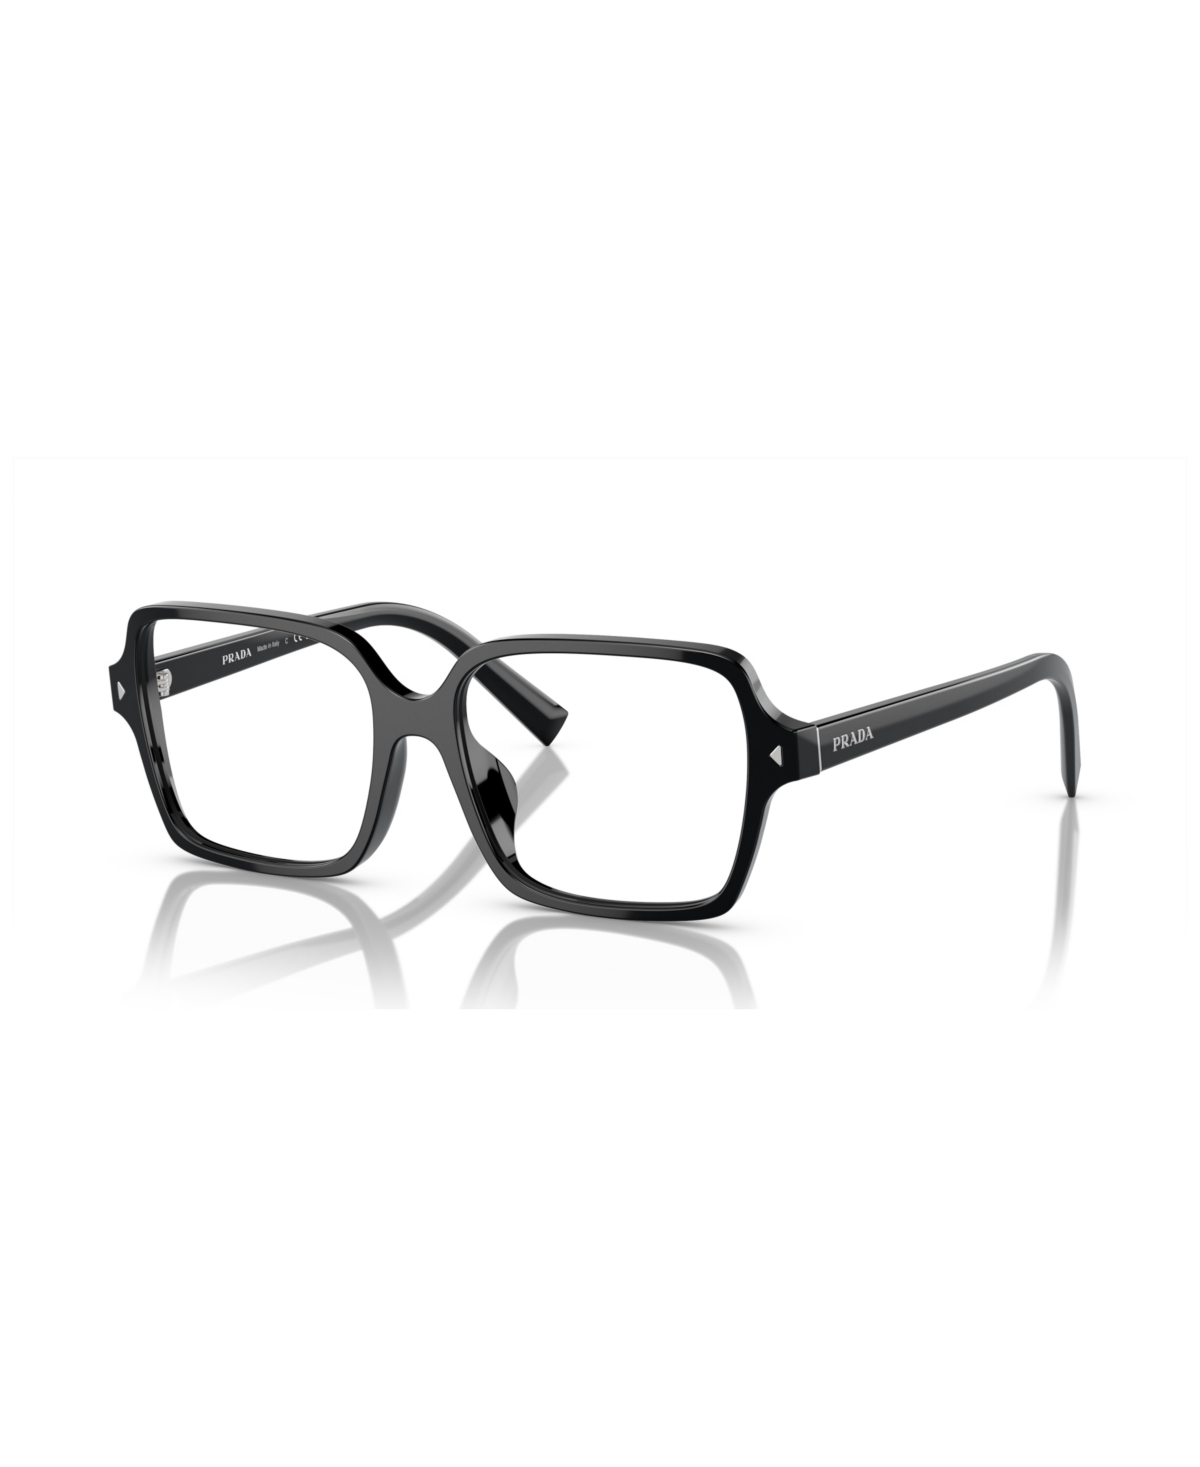 Women's Eyeglasses, Pr A02V - Black